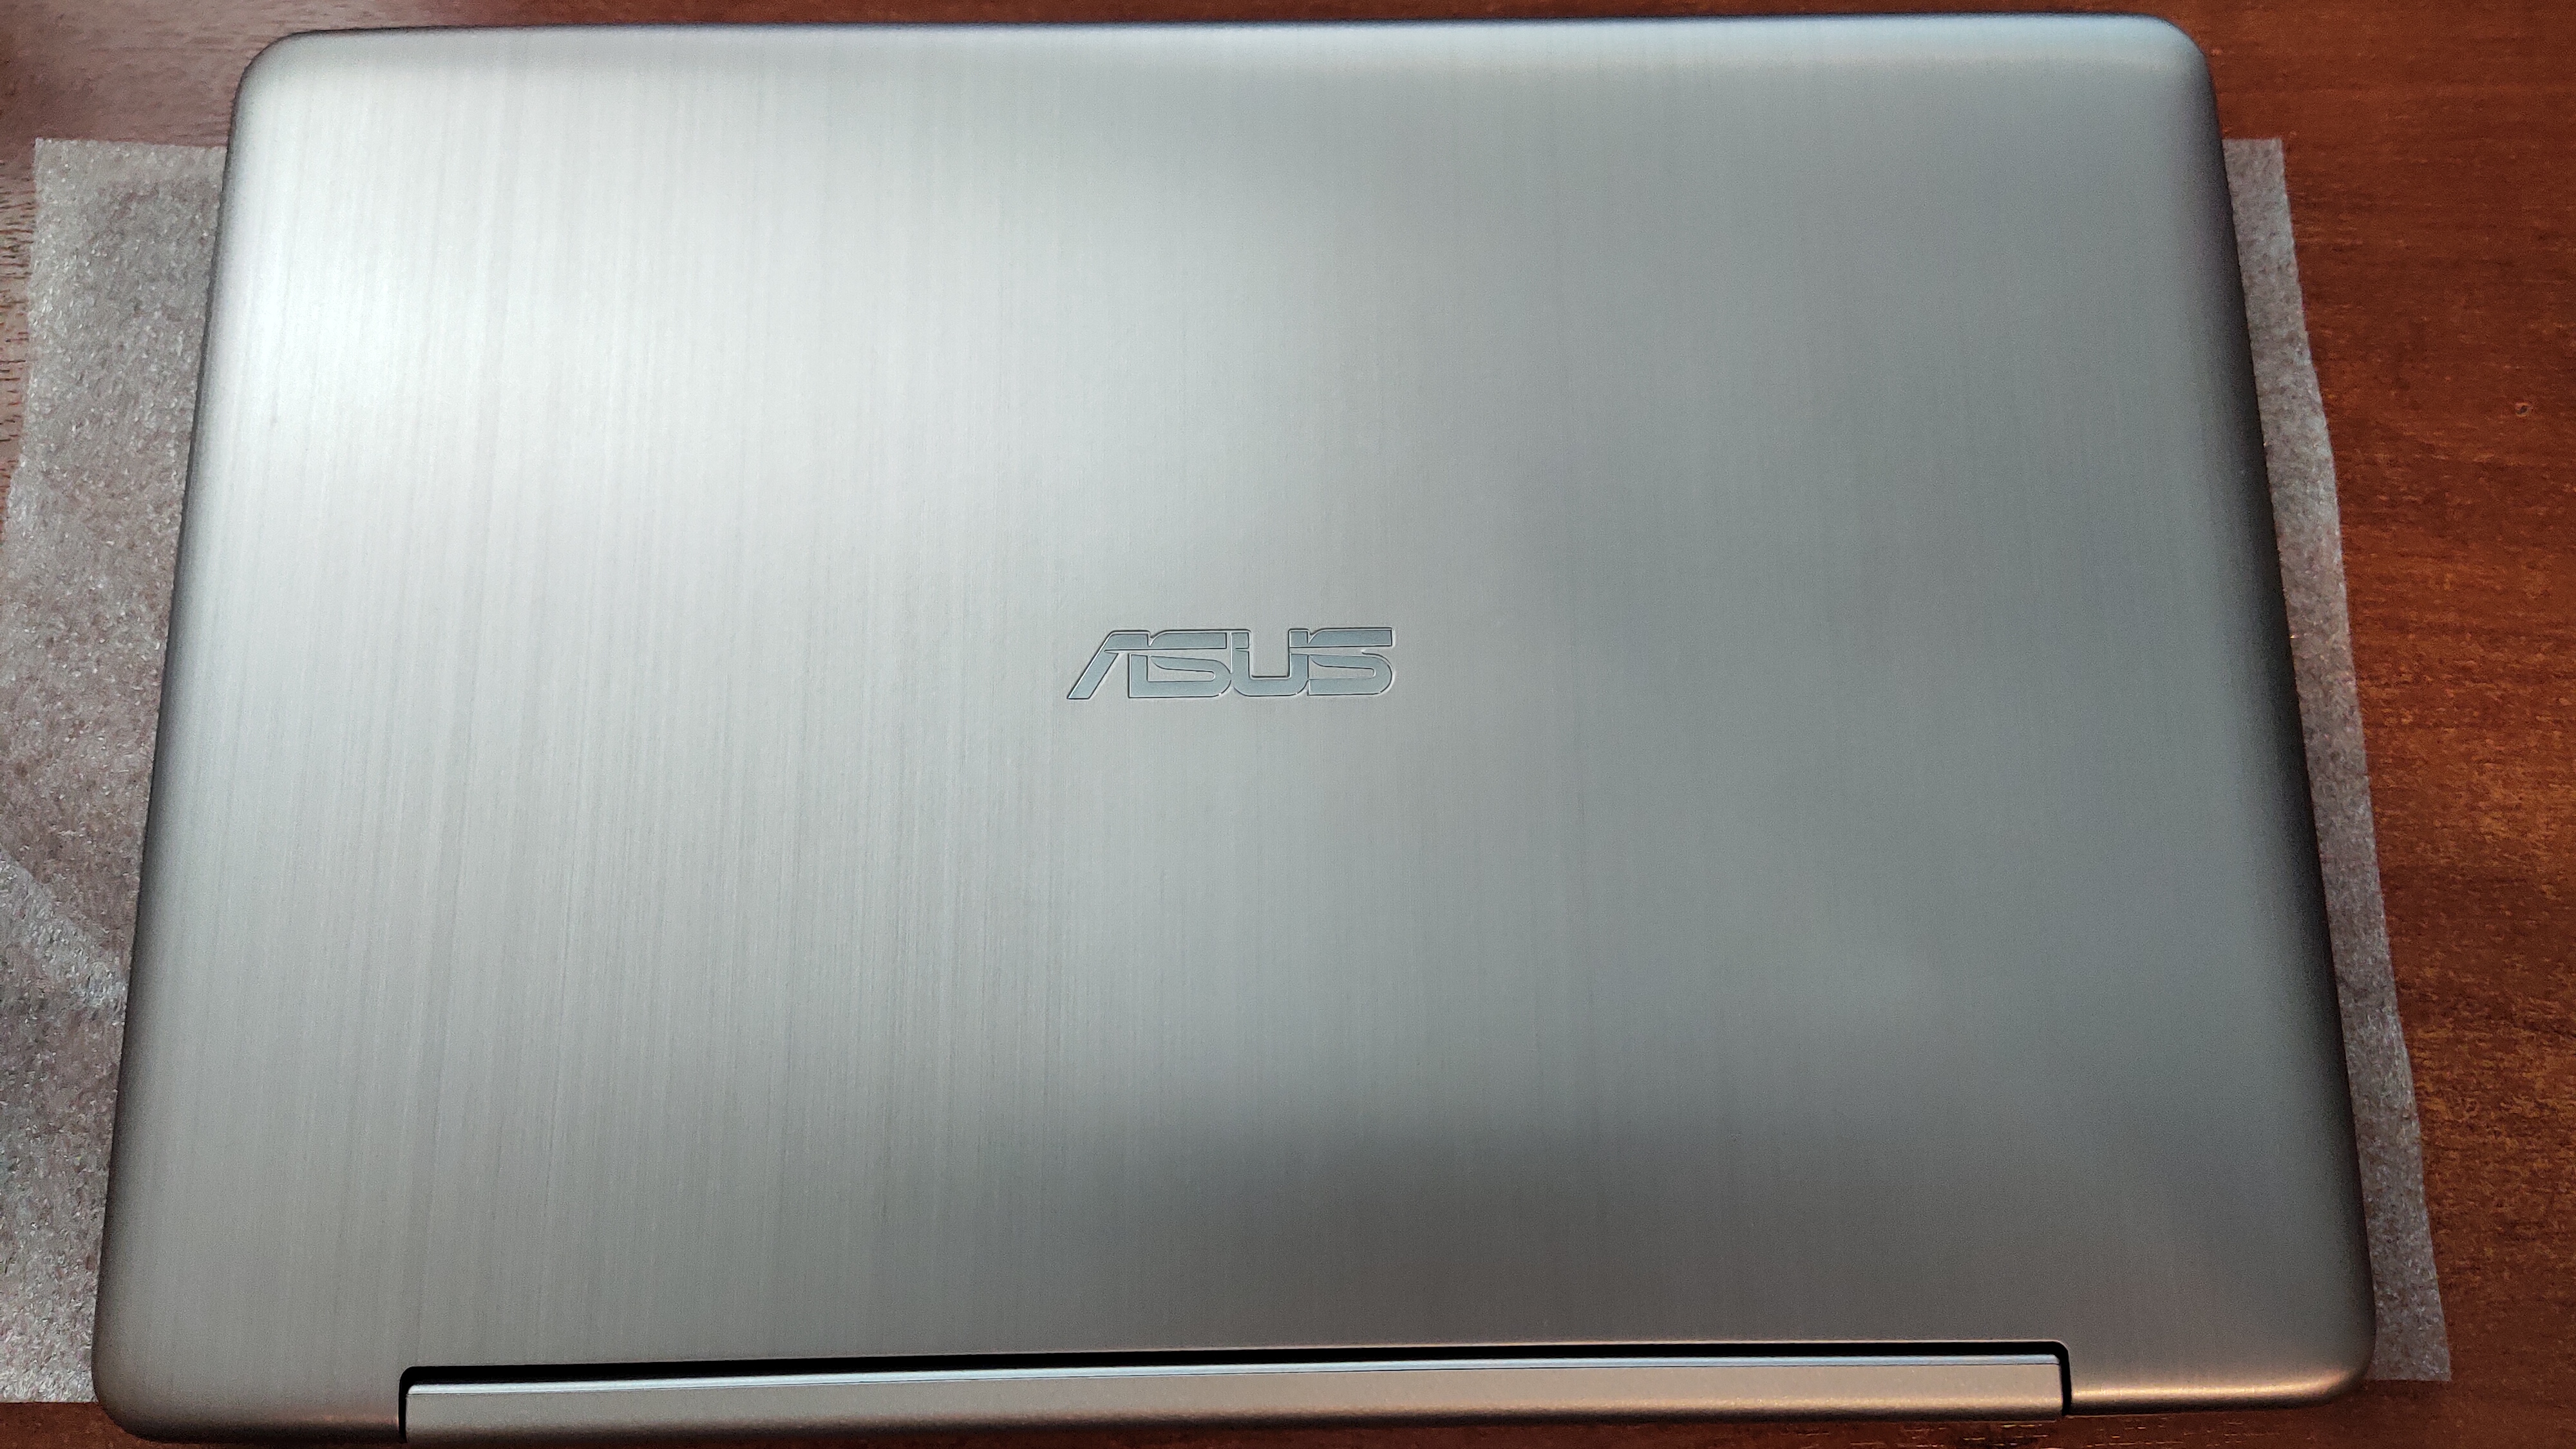 Satıldı ASUS Notebook TP200SA Intel N3050 2GB 32GB SSD Sıfır Temizlikte 